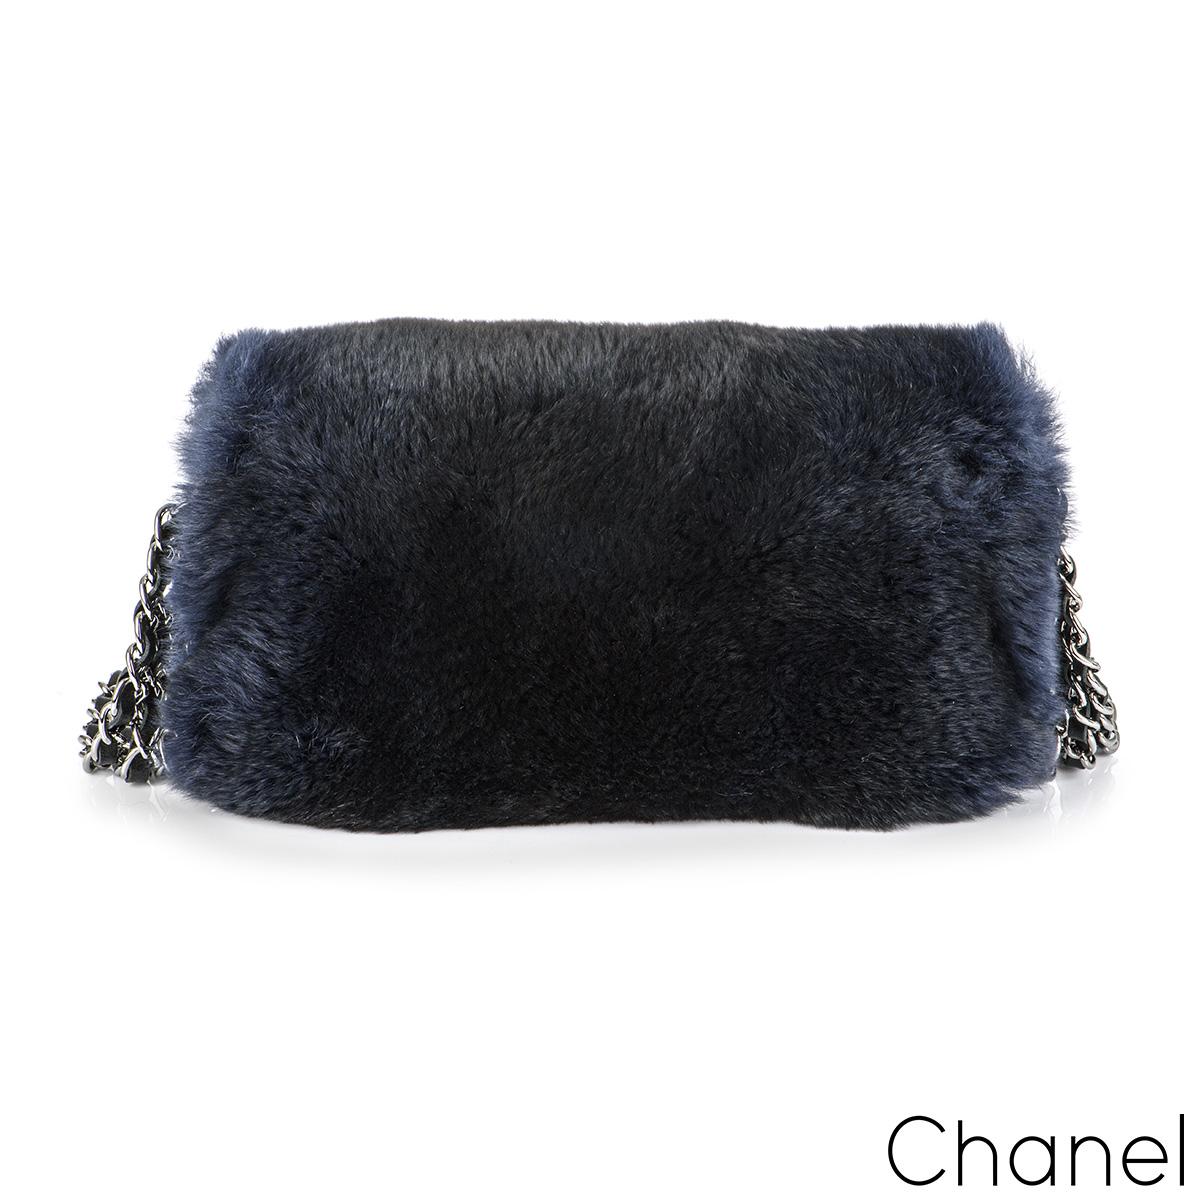 Eine stilvolle und schicke Chanel Orylag Klappentasche aus der Herbst/Winter 2015 Act 1 Collection. Das Äußere dieser Tasche besteht aus einem marineblauen Oryllpelz mit silberfarbener, antikisierter Hardware. Sie verfügt über den charakteristischen